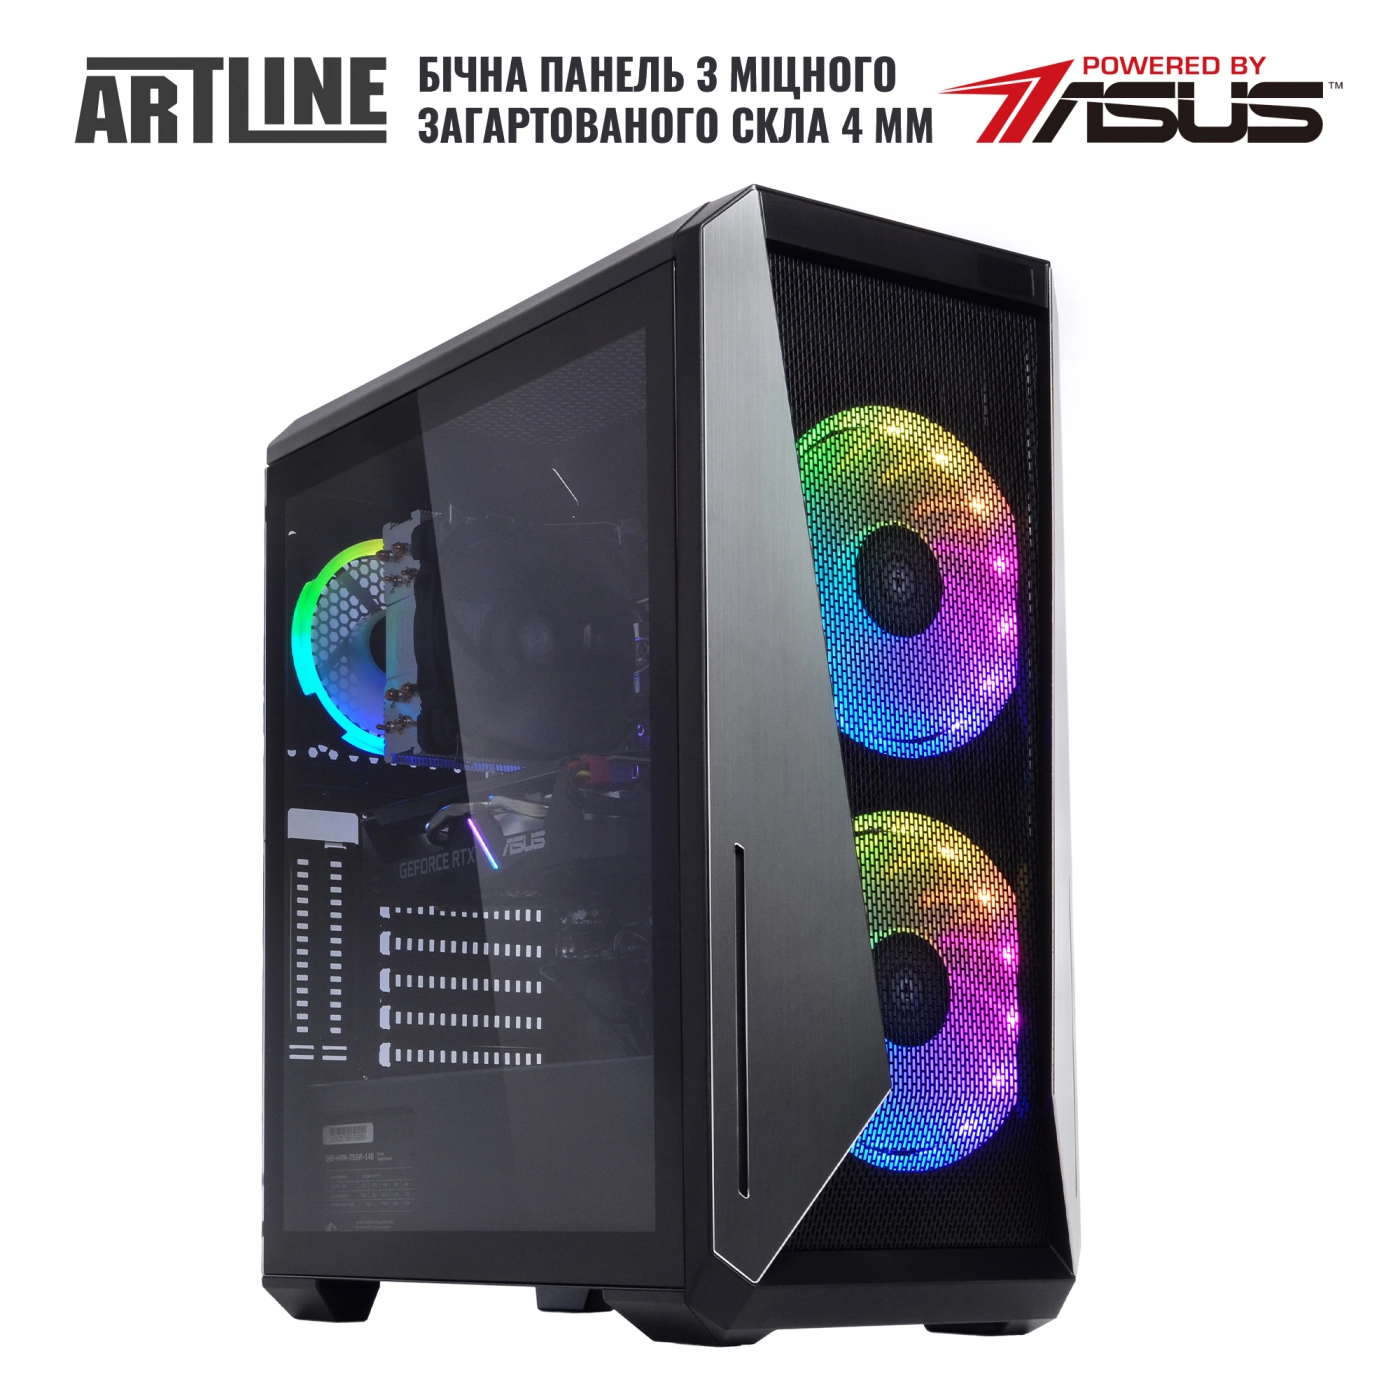 Купить Компьютер ARTLINE Gaming X78v15 - фото 5